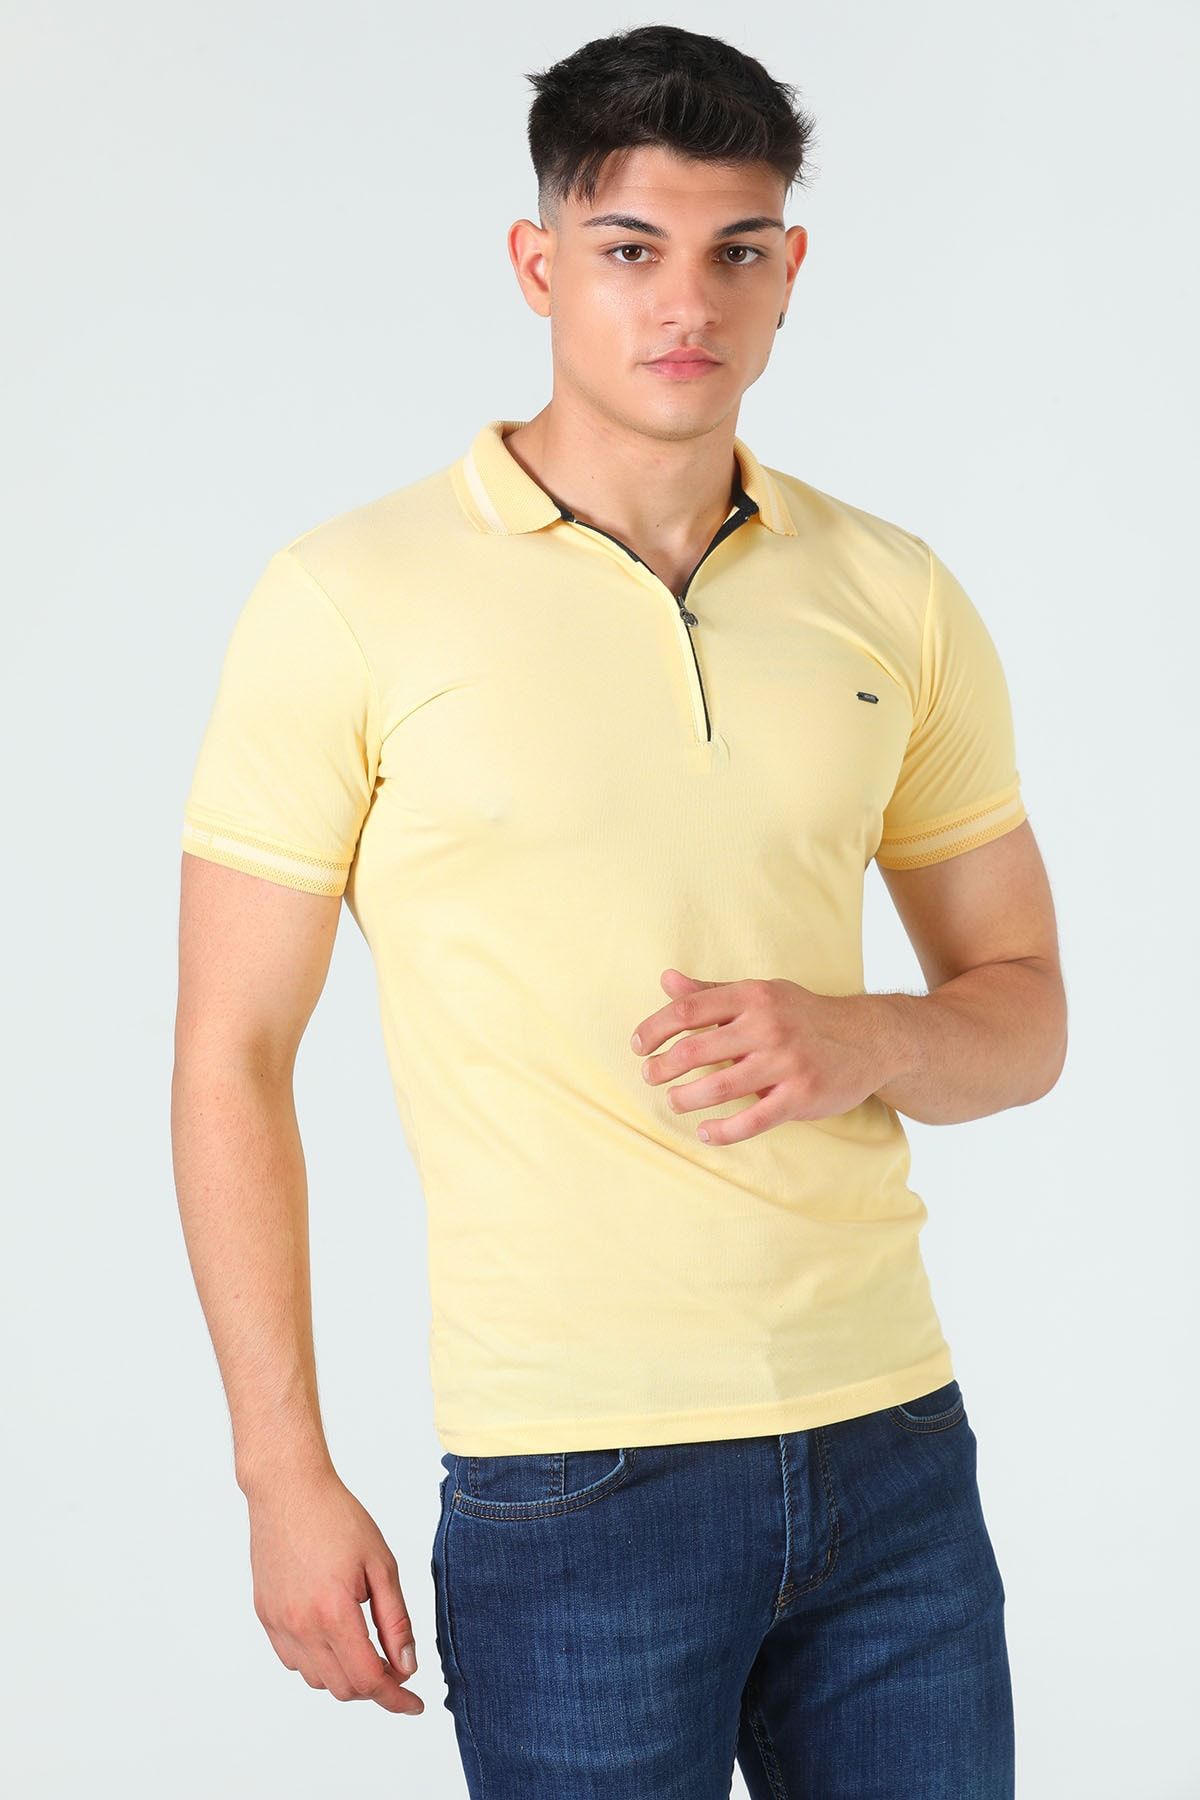 Julude Sarı Erkek Polo Yaka Fermuar Detaylı Slim Fit T-shirt